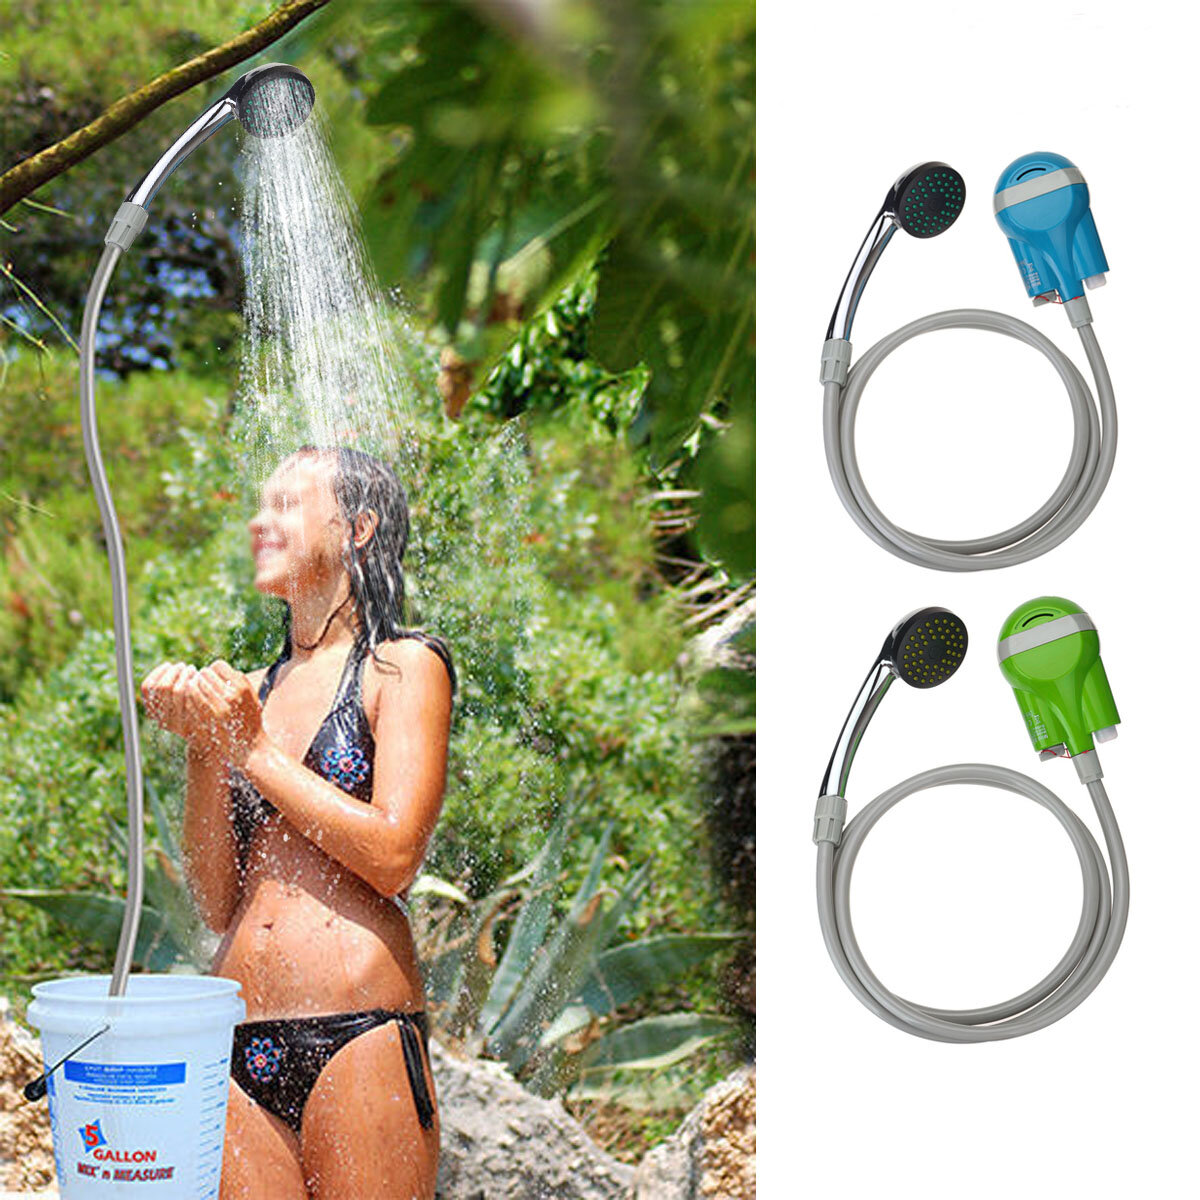 IPRee® Tragbares Duschwasser Pumpe USB Wiederaufladbare Düse Handheld Wasserspary Duscharmatur Camping Wohnwagen Reisen Outdoor Satz